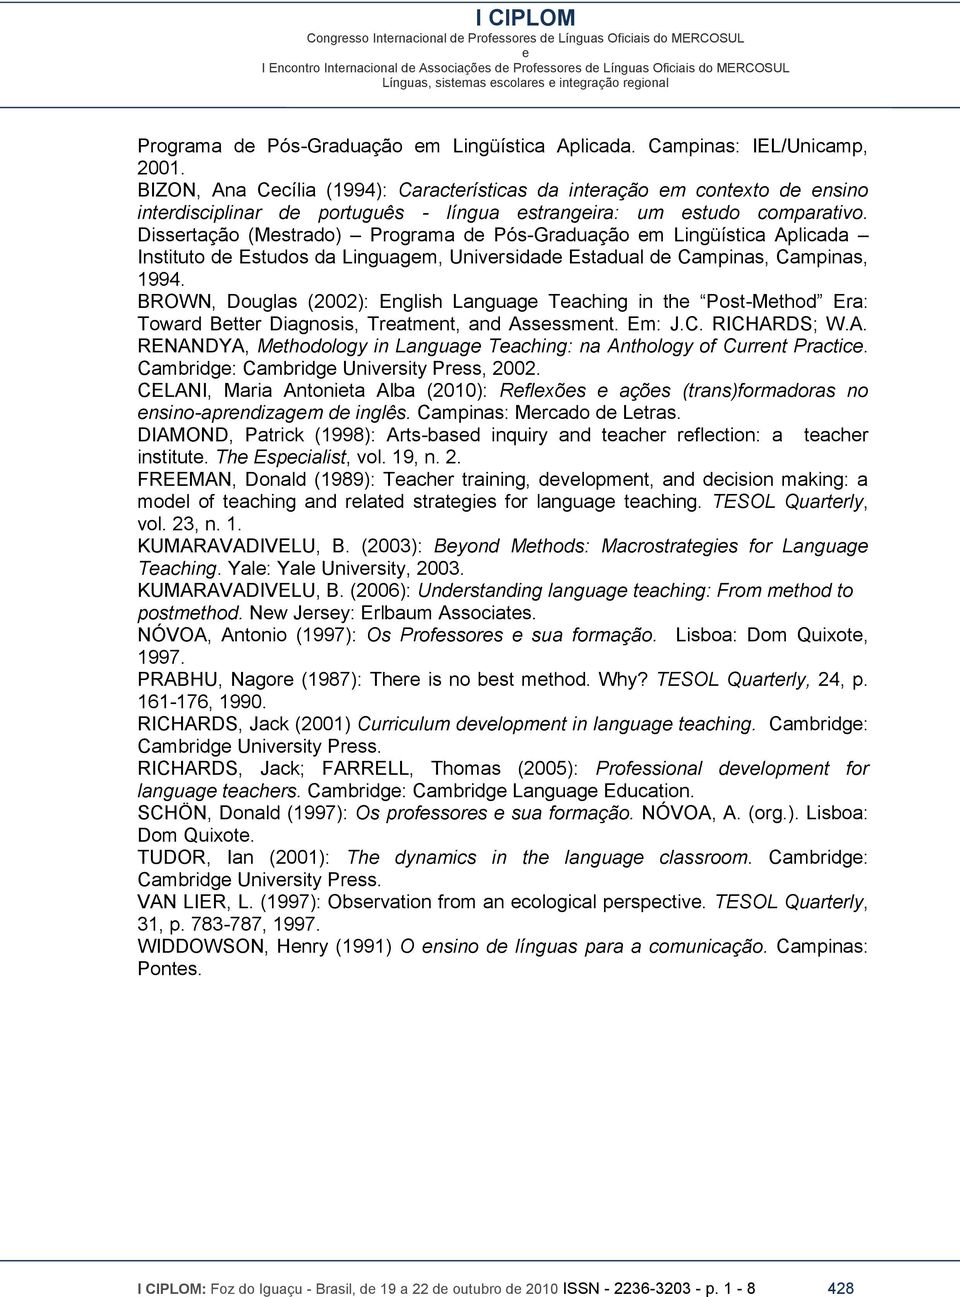 Dissrtação (Mstrado) Programa d Pós-Graduação m Lingüística Aplicada Instituto d Estudos da Linguagm, Univrsidad Estadual d Campinas, Campinas, 1994.